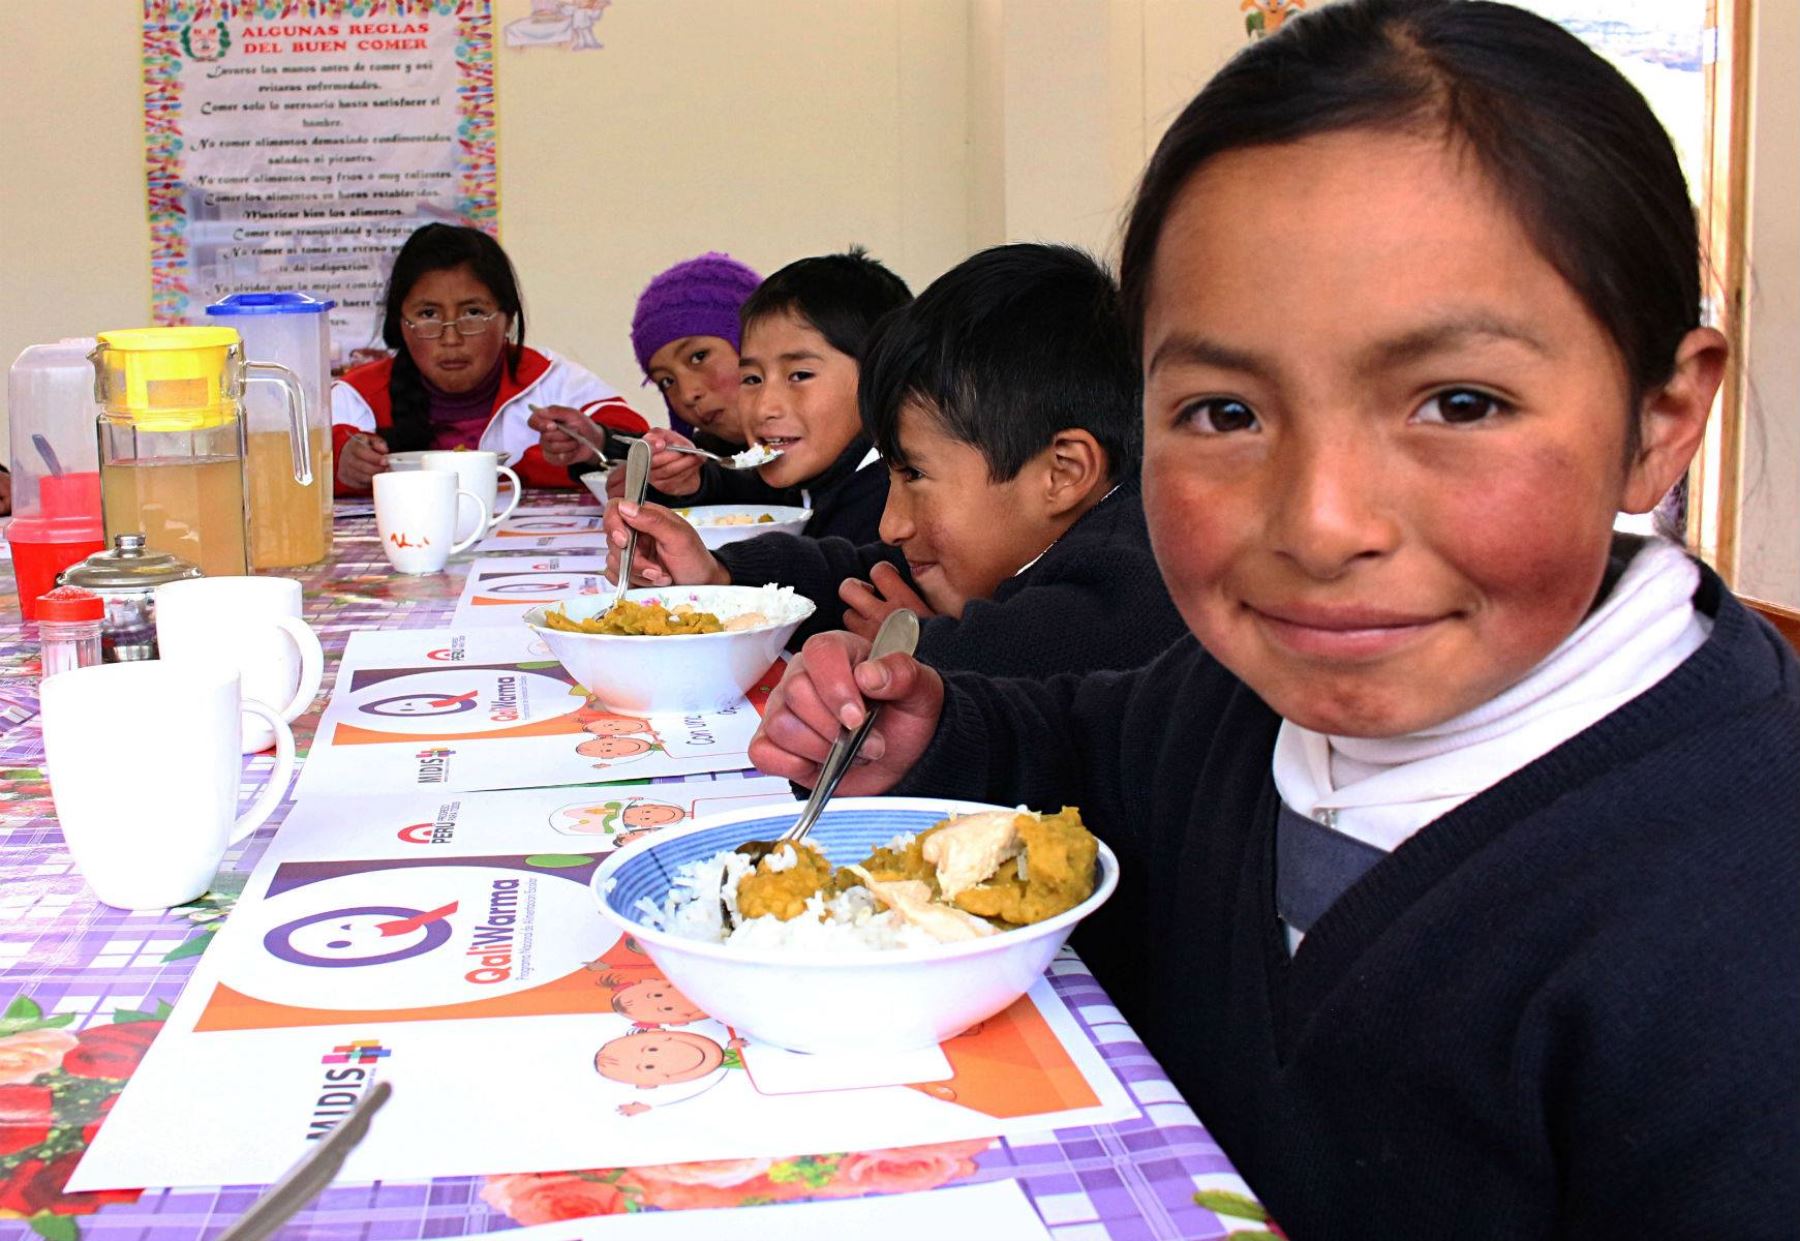 Qali Warma brinda alimentación a niños en extrema pobreza. Foto: Difusión